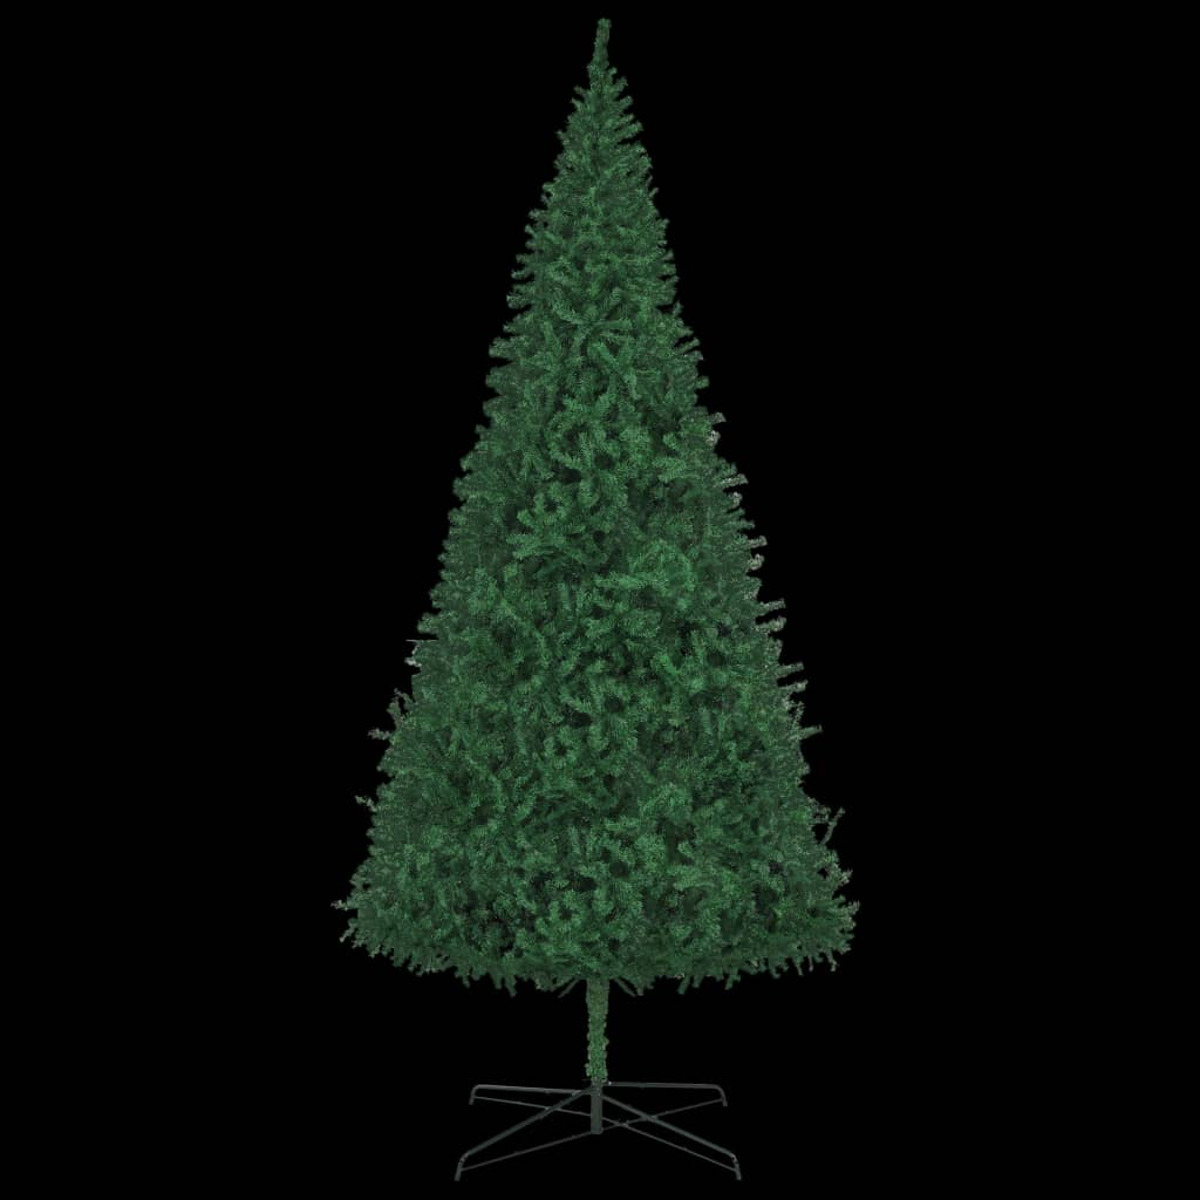 VIDAXL 3077886 Weihnachtsbaum